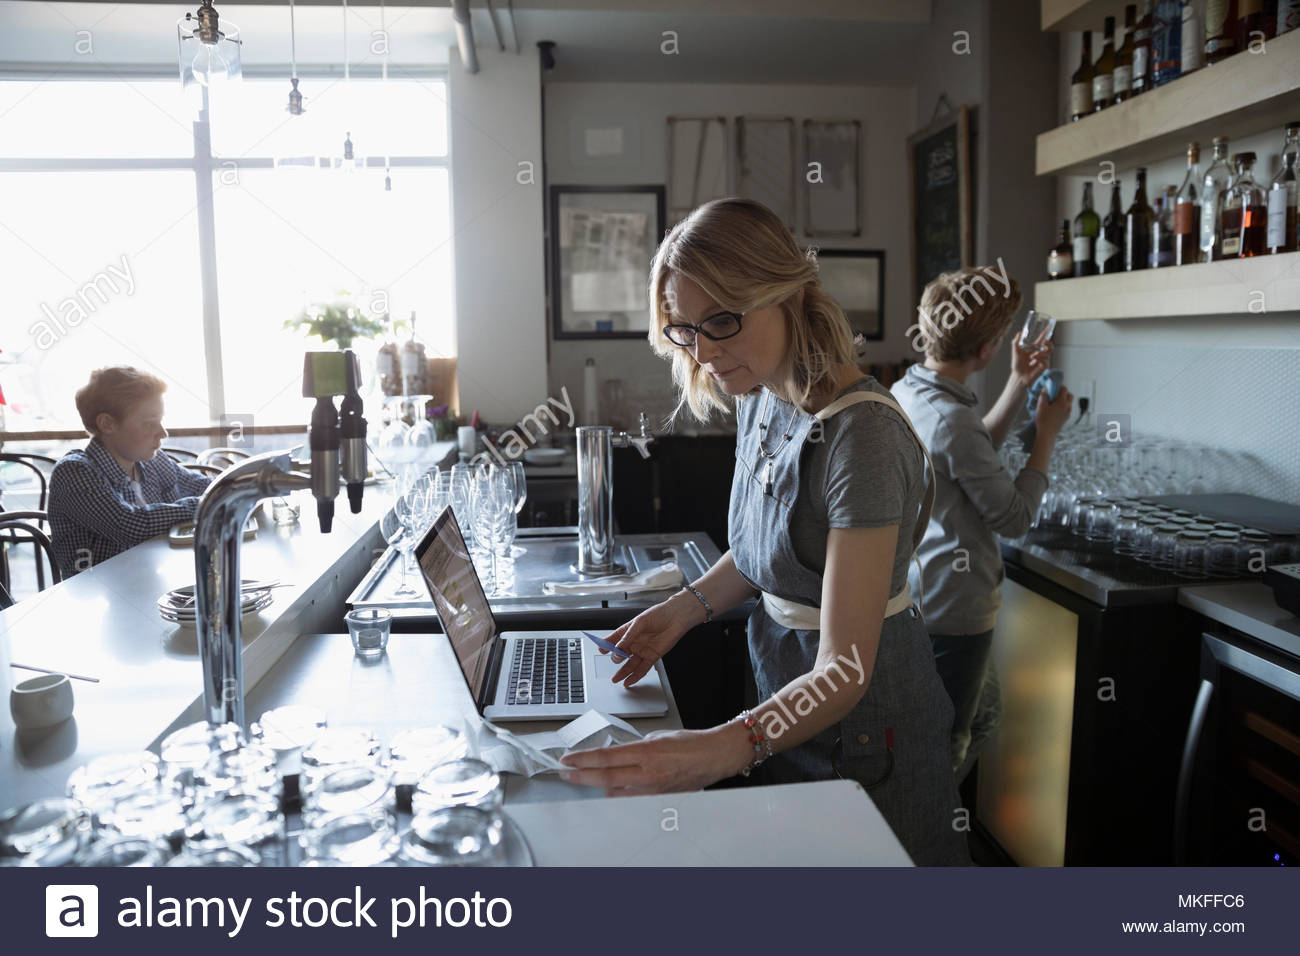 Propriétaire de l'entreprise familiale working at laptop in cafe Banque D'Images